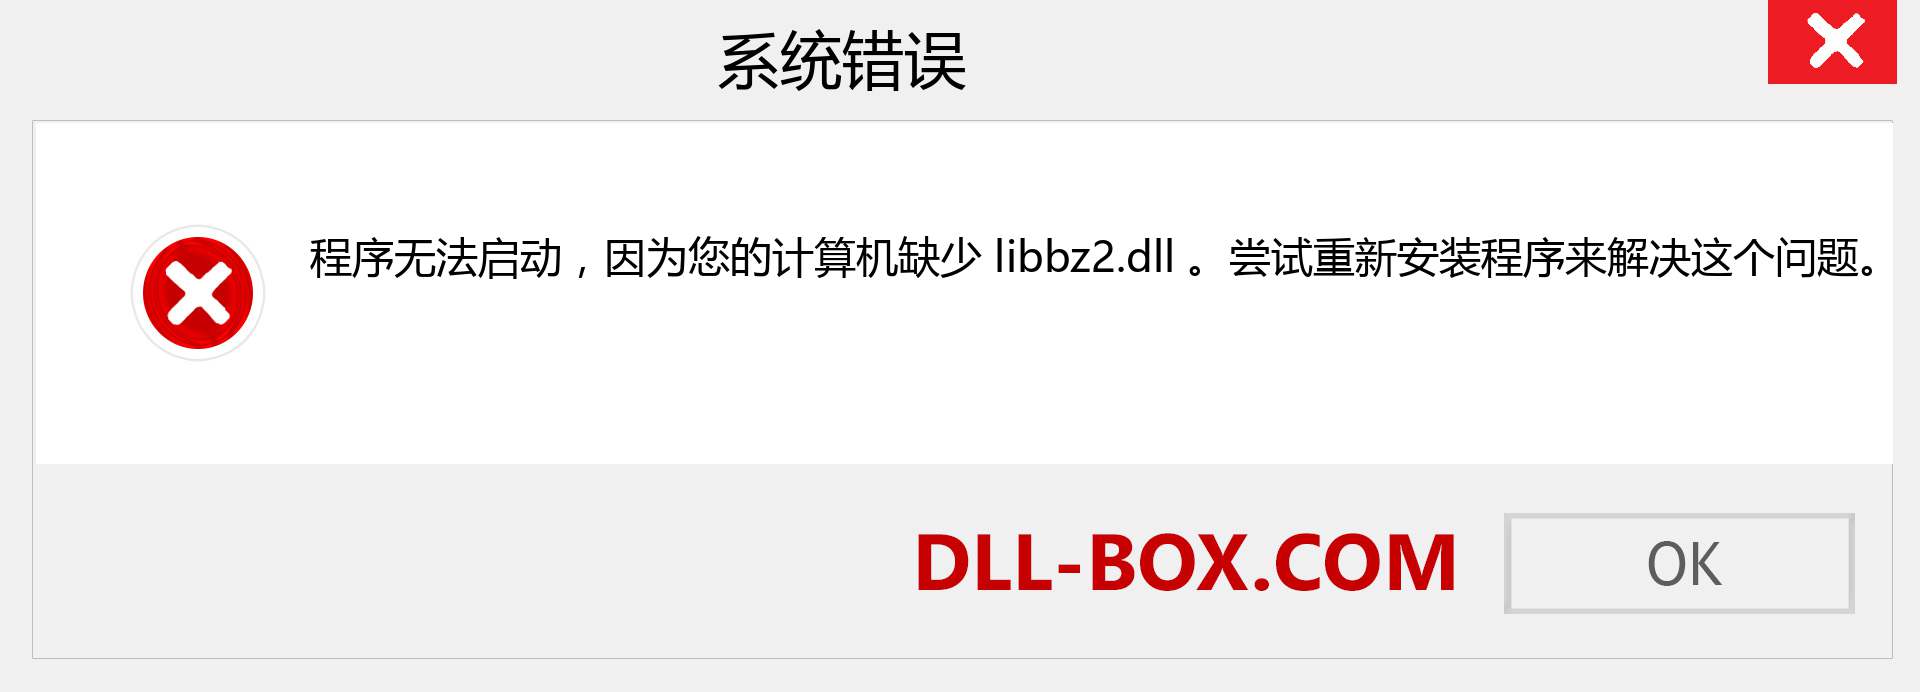 libbz2.dll 文件丢失？。 适用于 Windows 7、8、10 的下载 - 修复 Windows、照片、图像上的 libbz2 dll 丢失错误